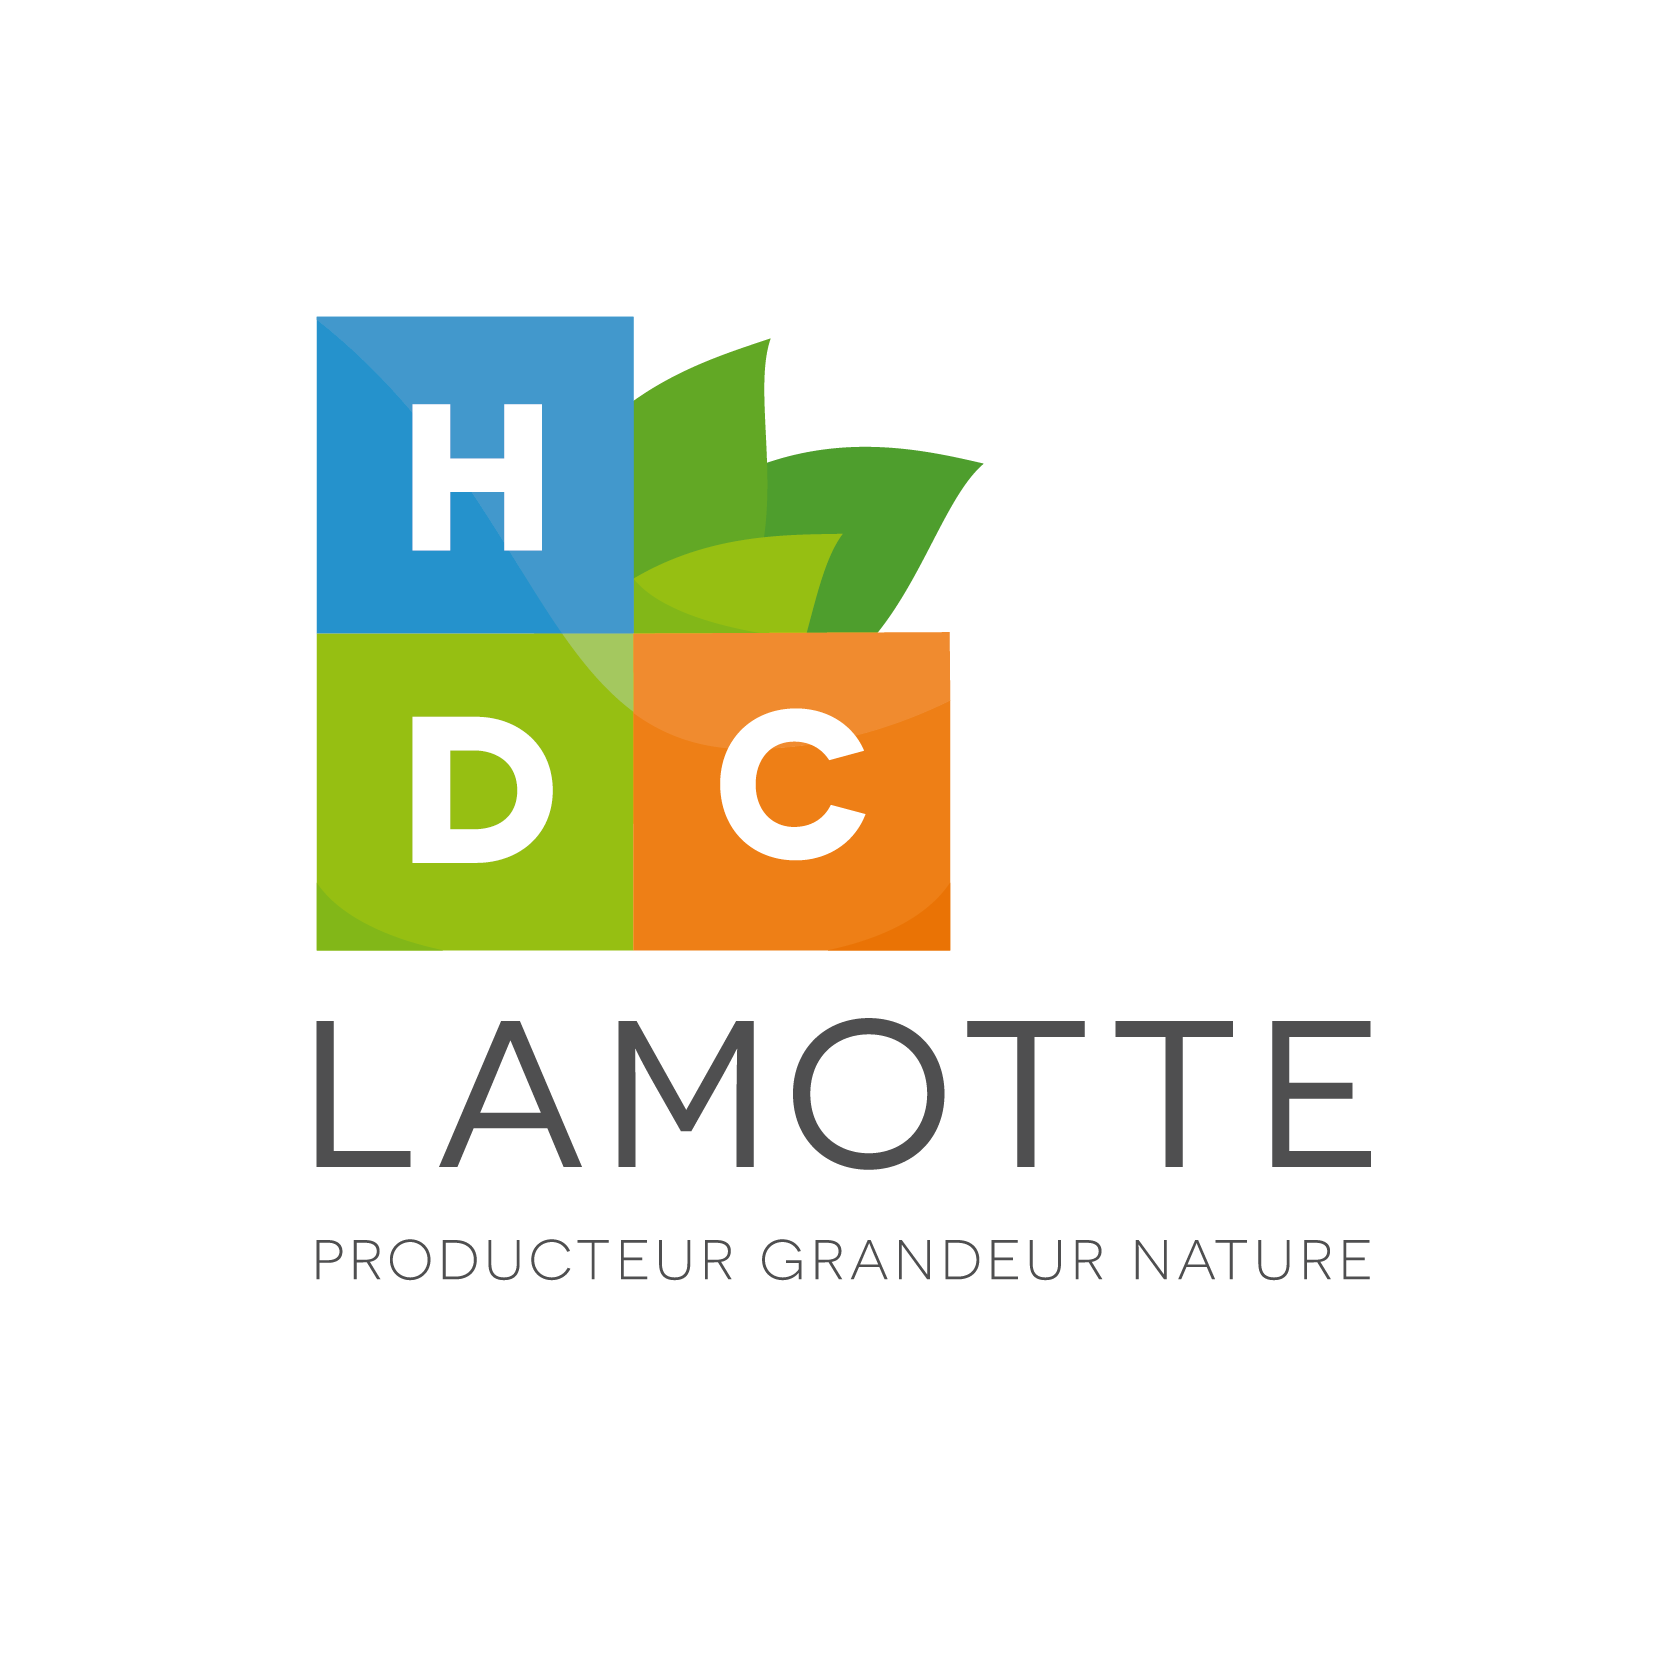 HDC LAMOTTE